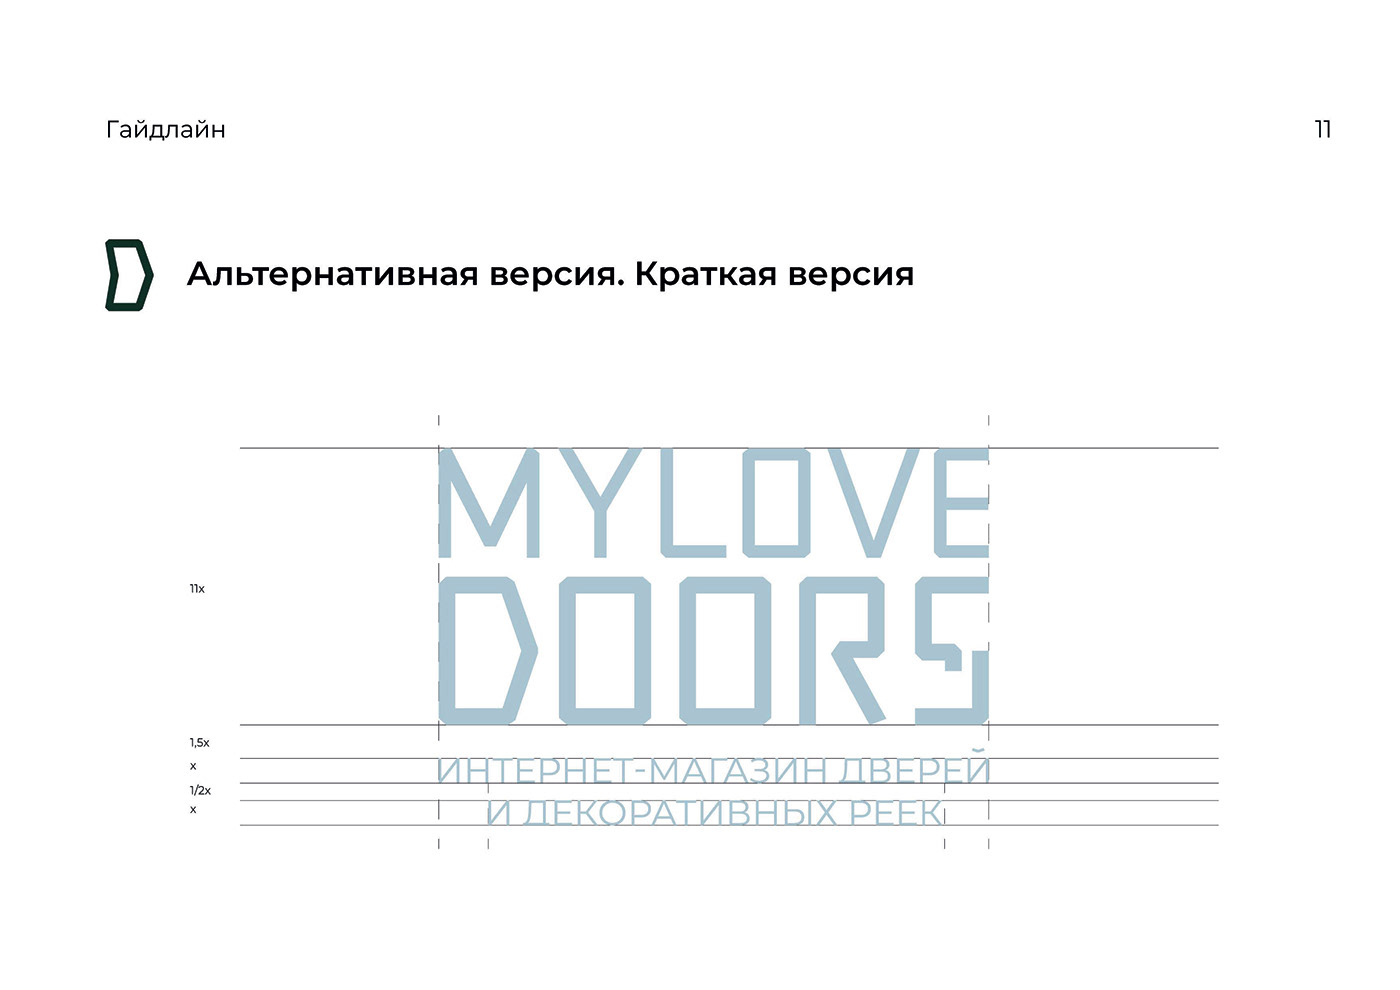 guidelines brandbook Logotipo айдентика брендинг полиграфия графический дизайн Двери строительство брендбук